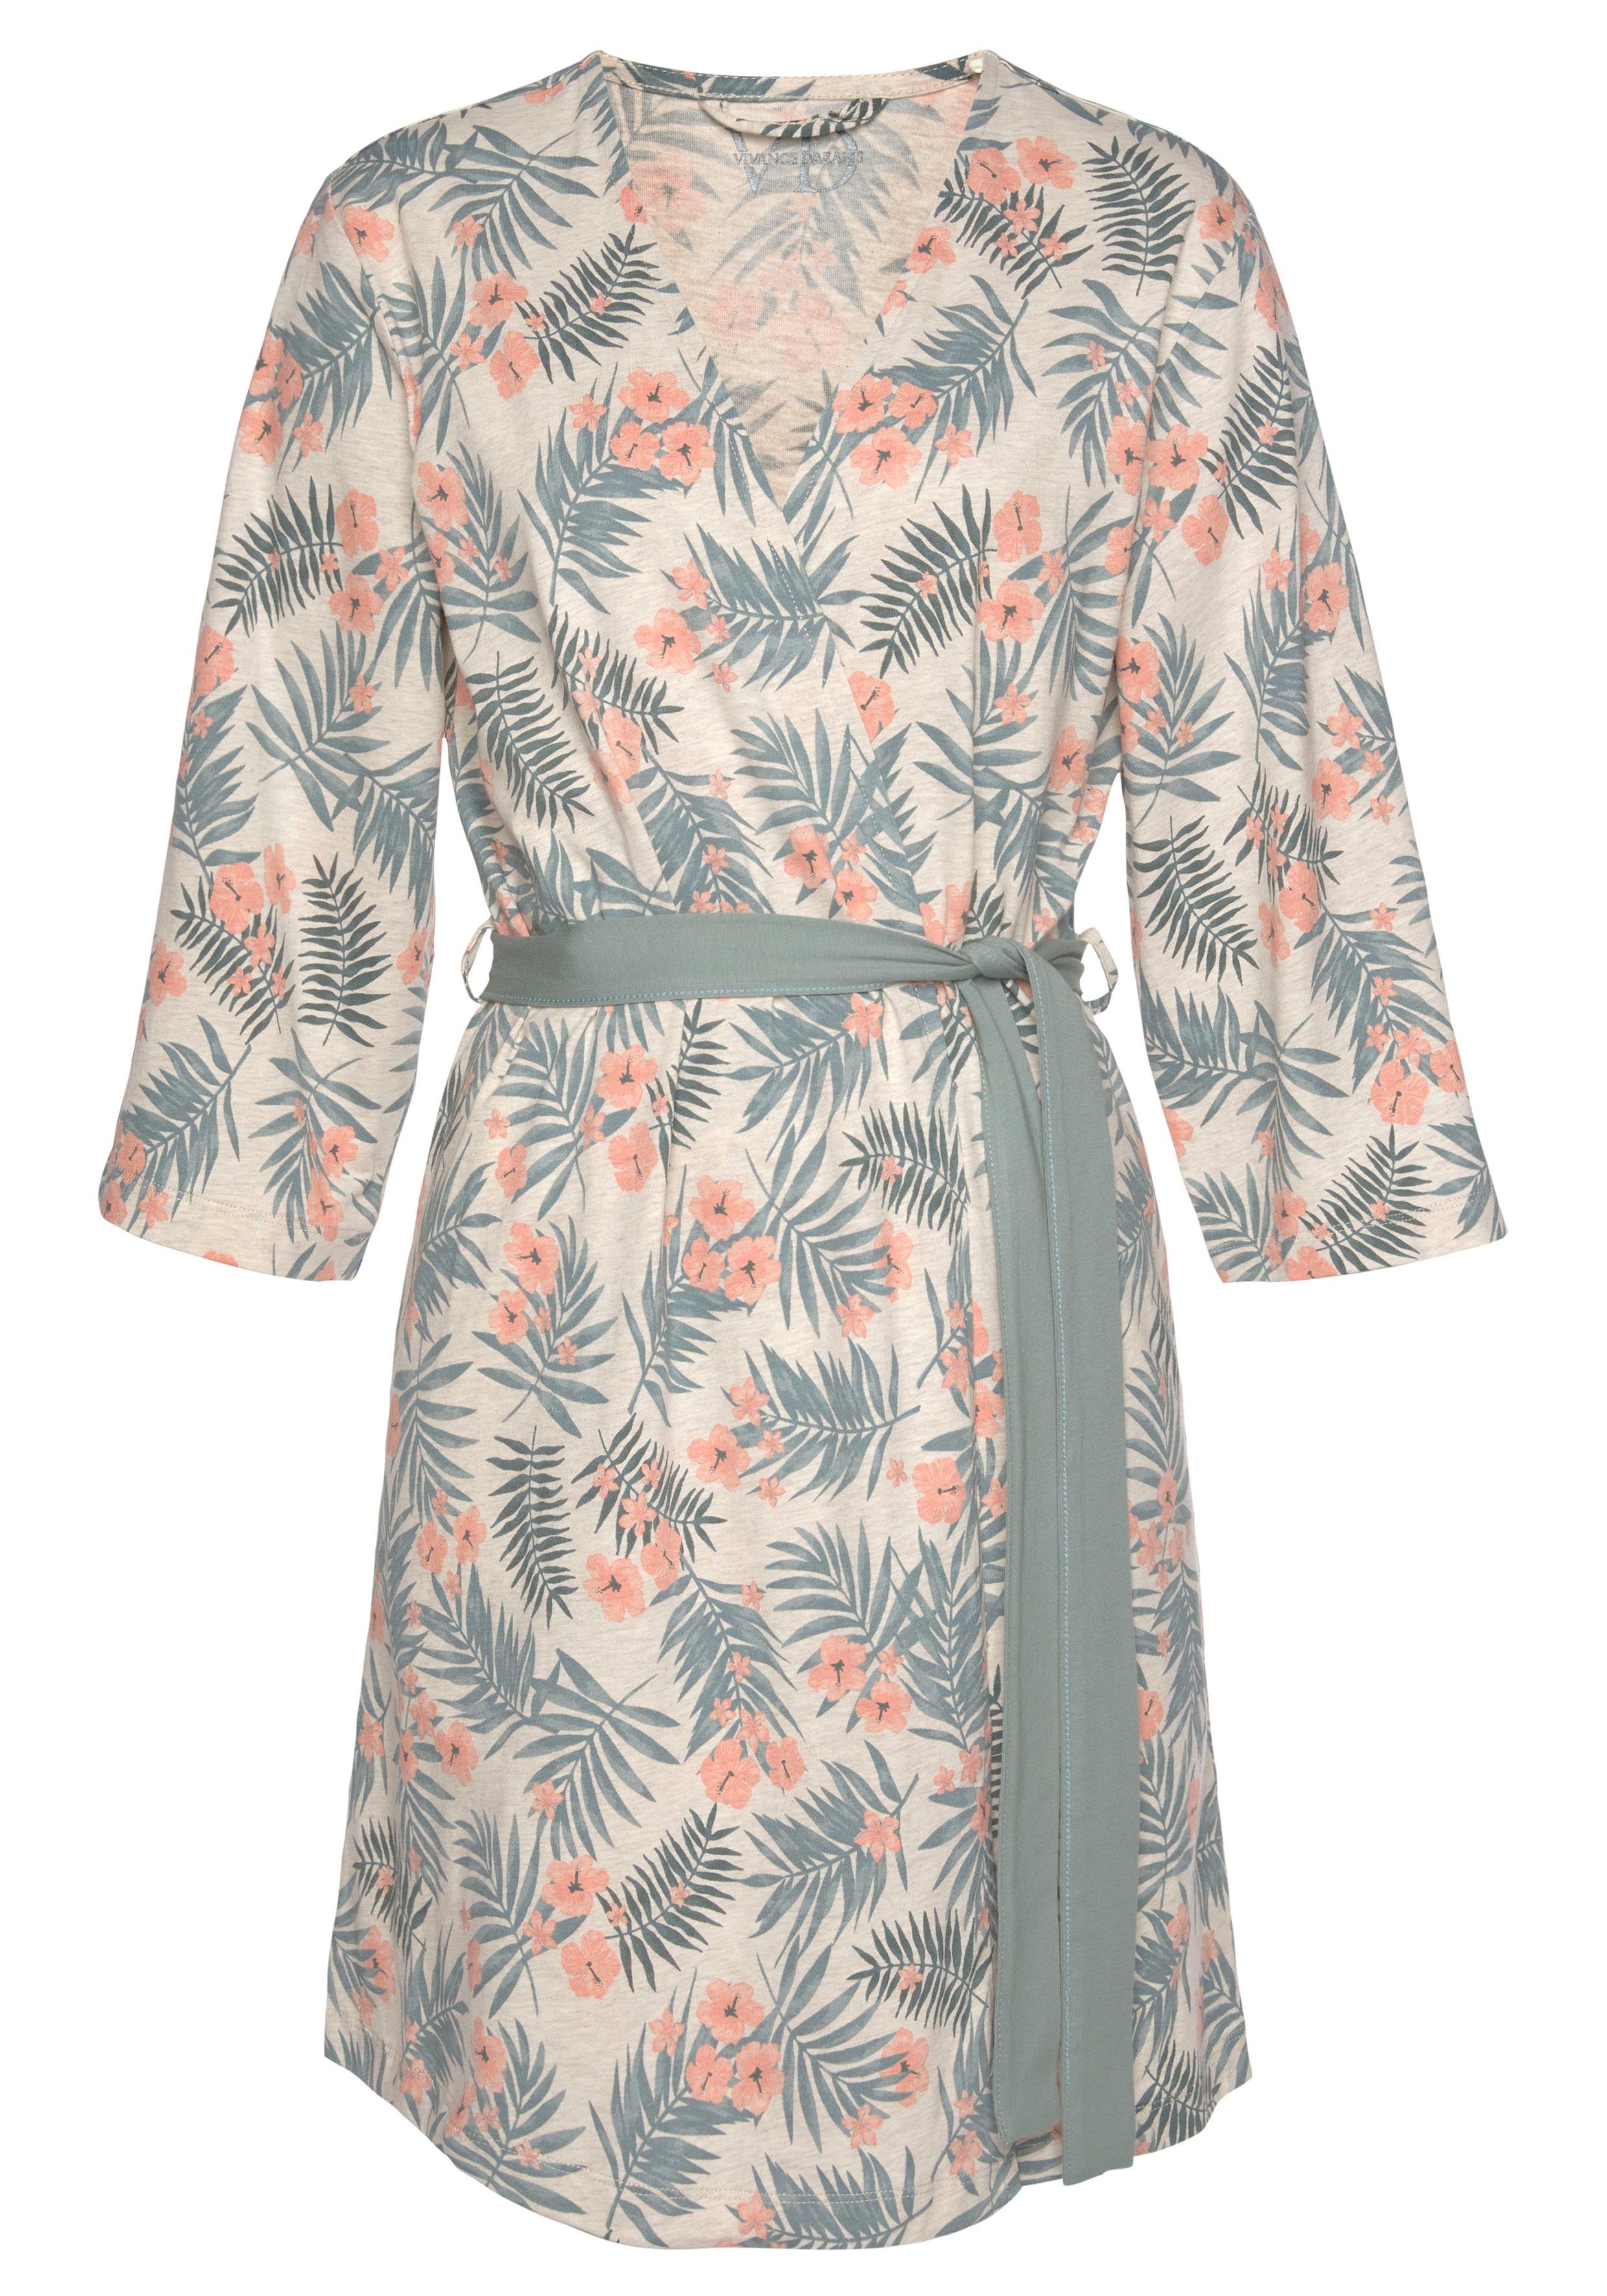 LASCANA Kimono, Kurzform, sand-grün in uni Allover-Druck und Gürtel, Baumwolle